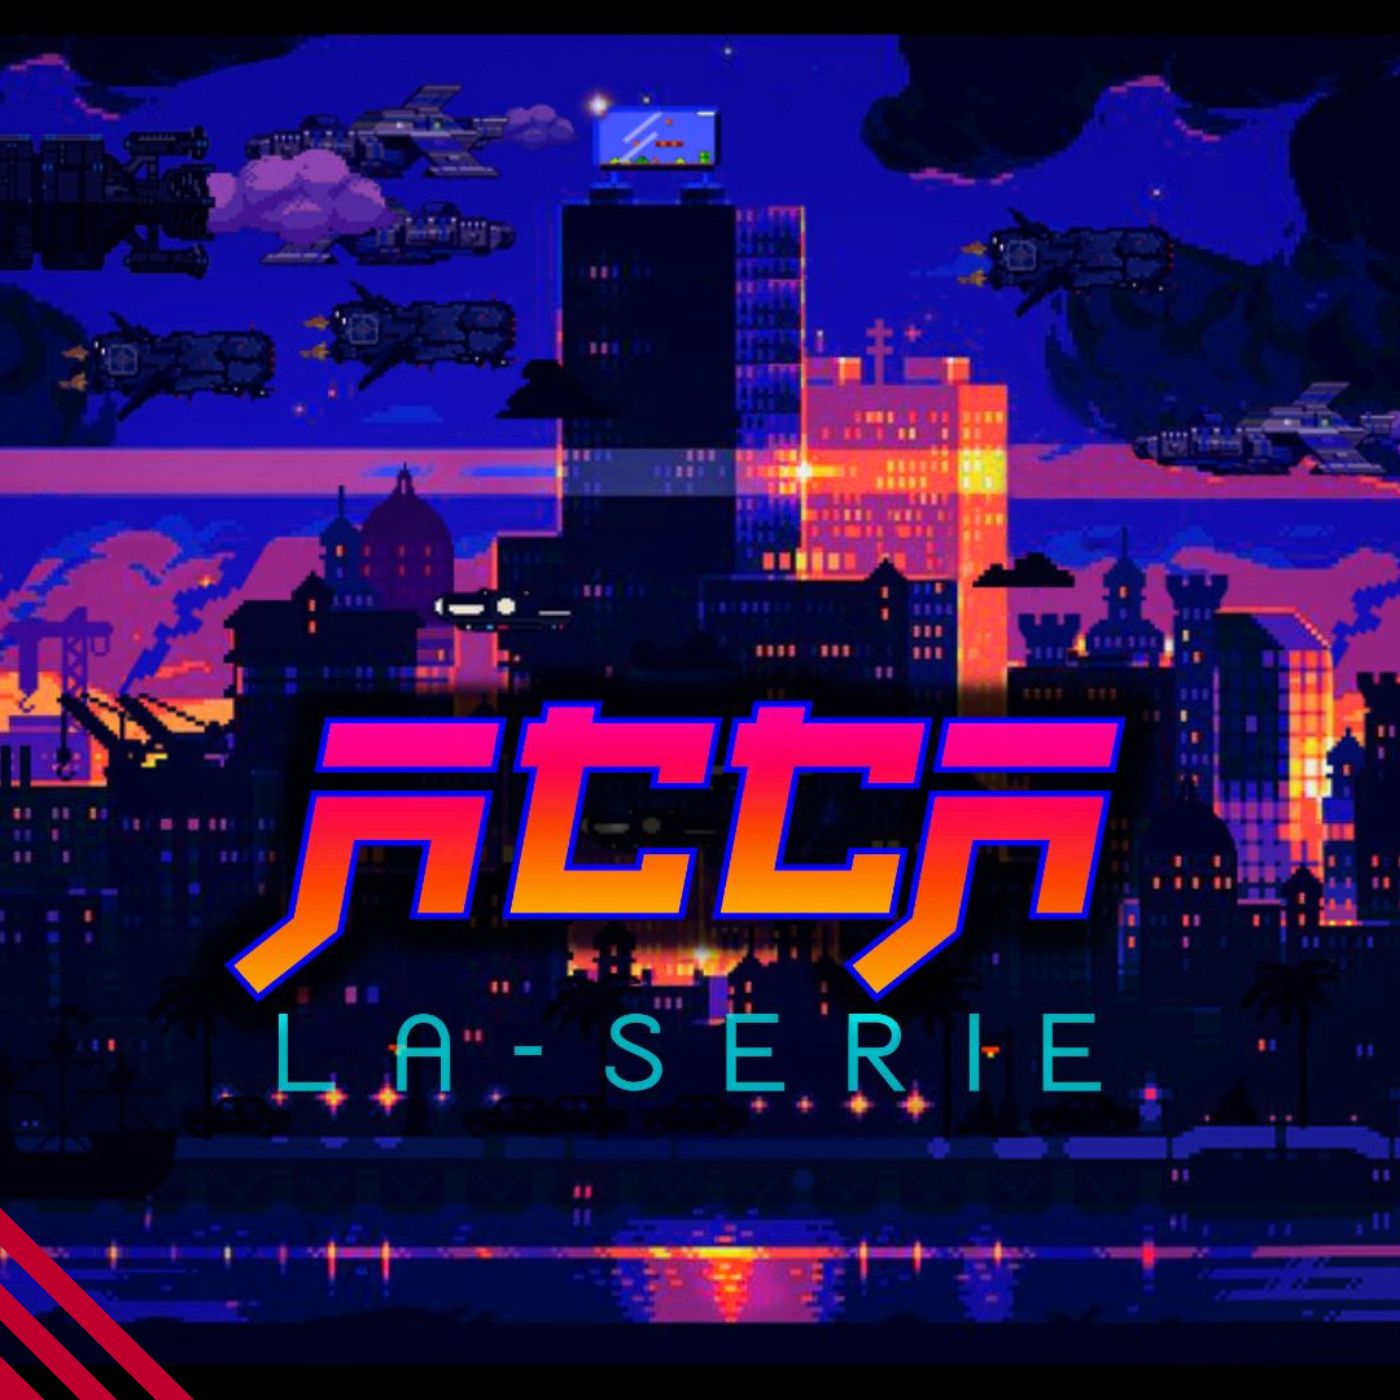 Immagine copertina della serie ACCA: illustrazione in pixel art, una panoramica di una città italiana futuristica in riva al mare